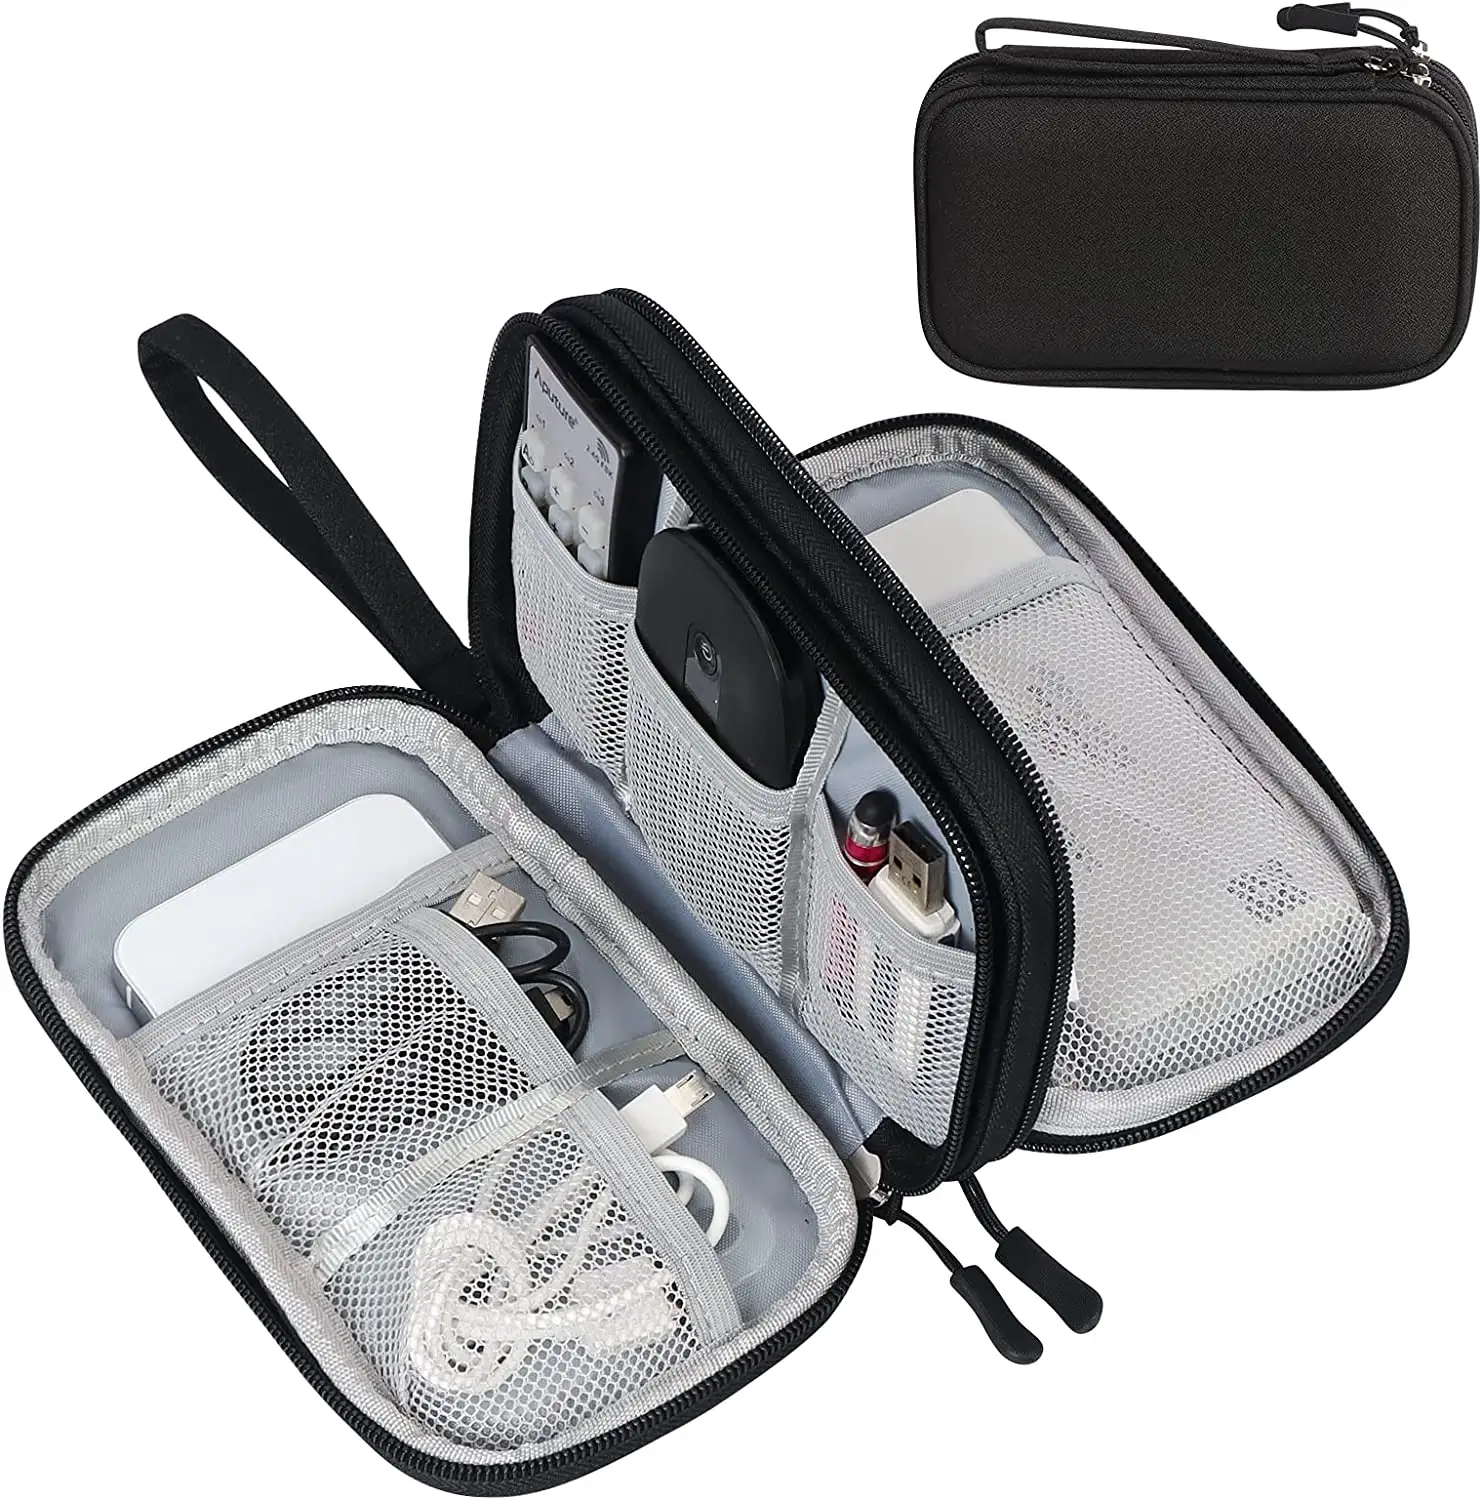 Toptan taşınabilir su geçirmez çift katmanlar All-in-One saklama çantası elektronik aksesuarları taşıma çantası seyahat kablo düzenleyici çantası